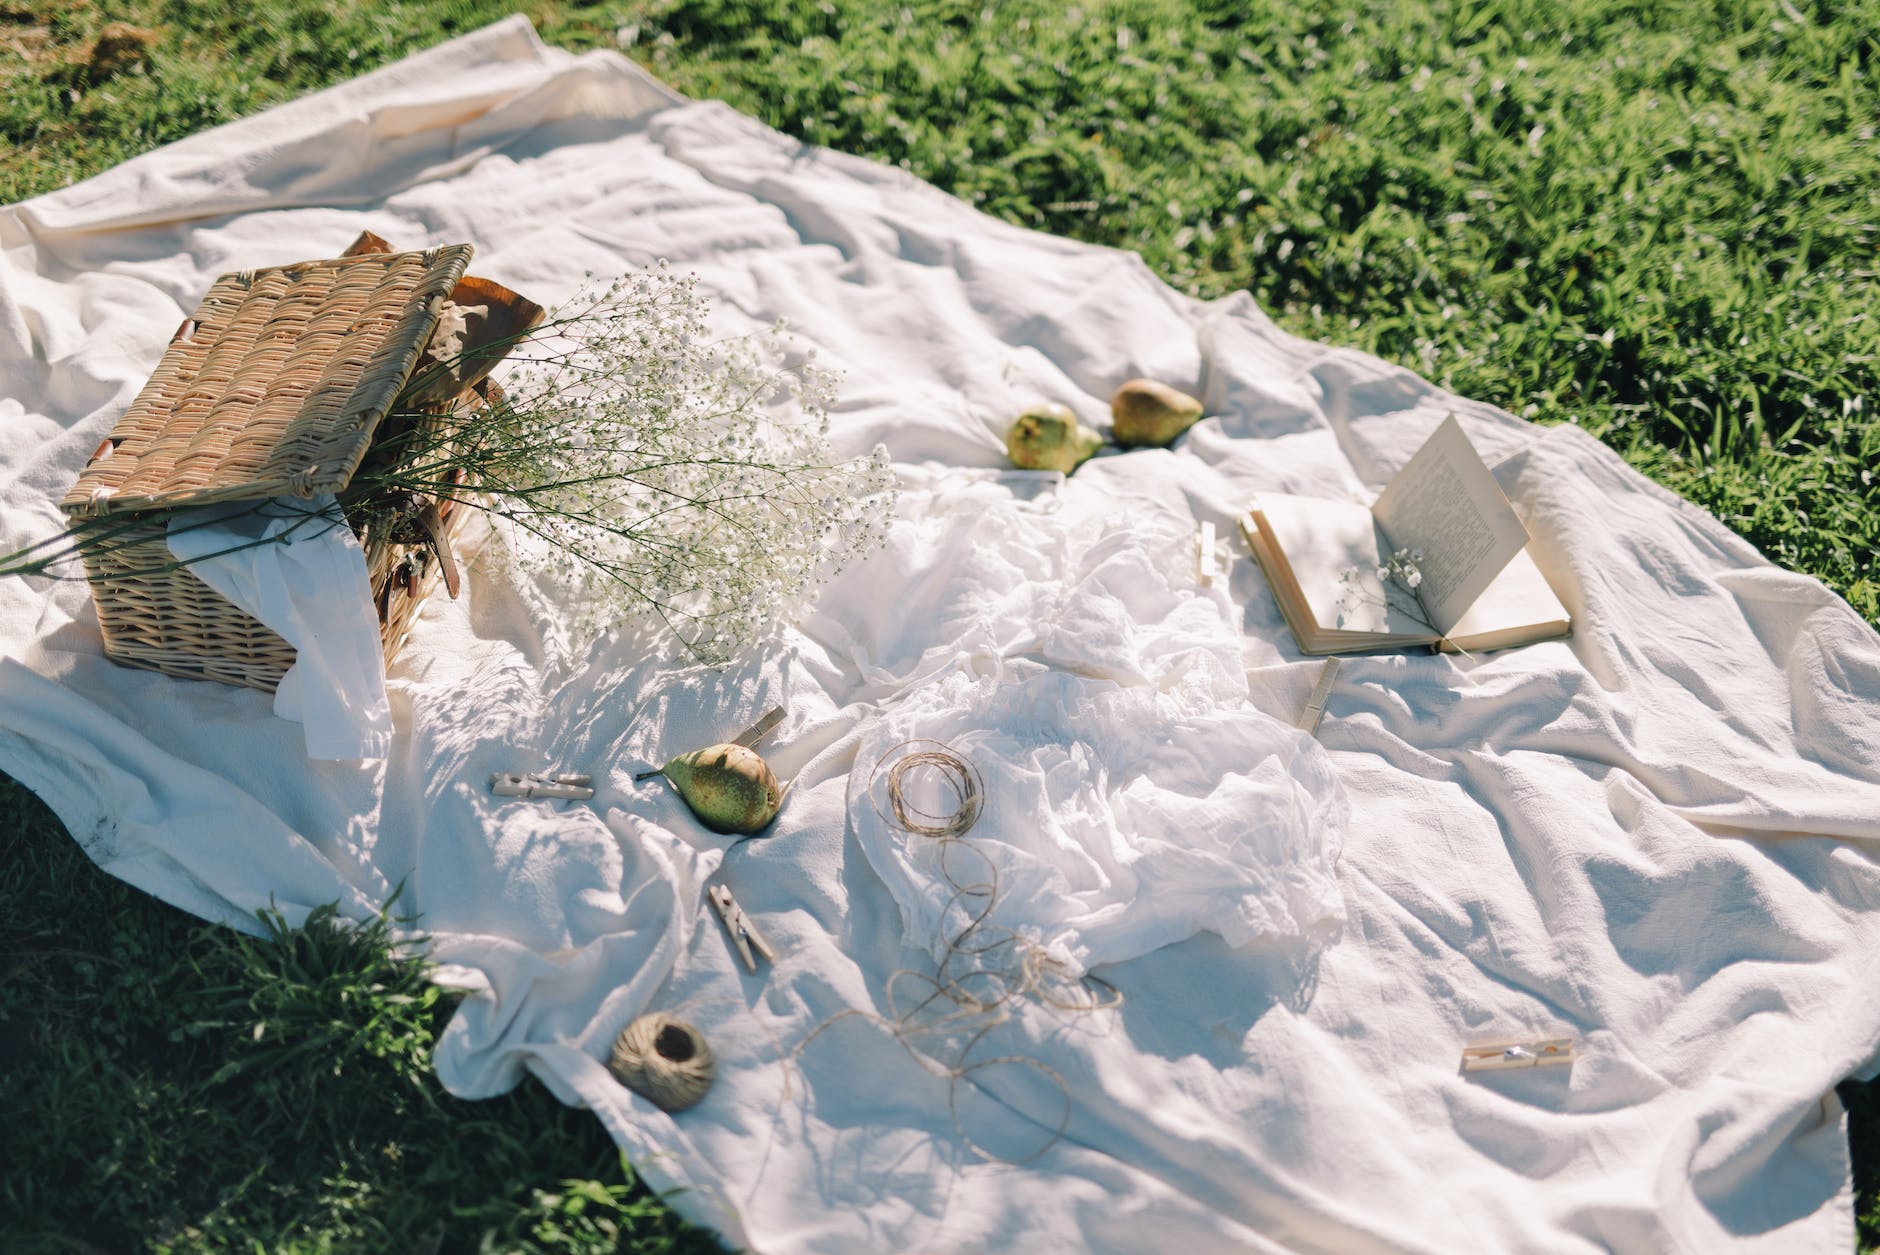 white picnic blanket on grass